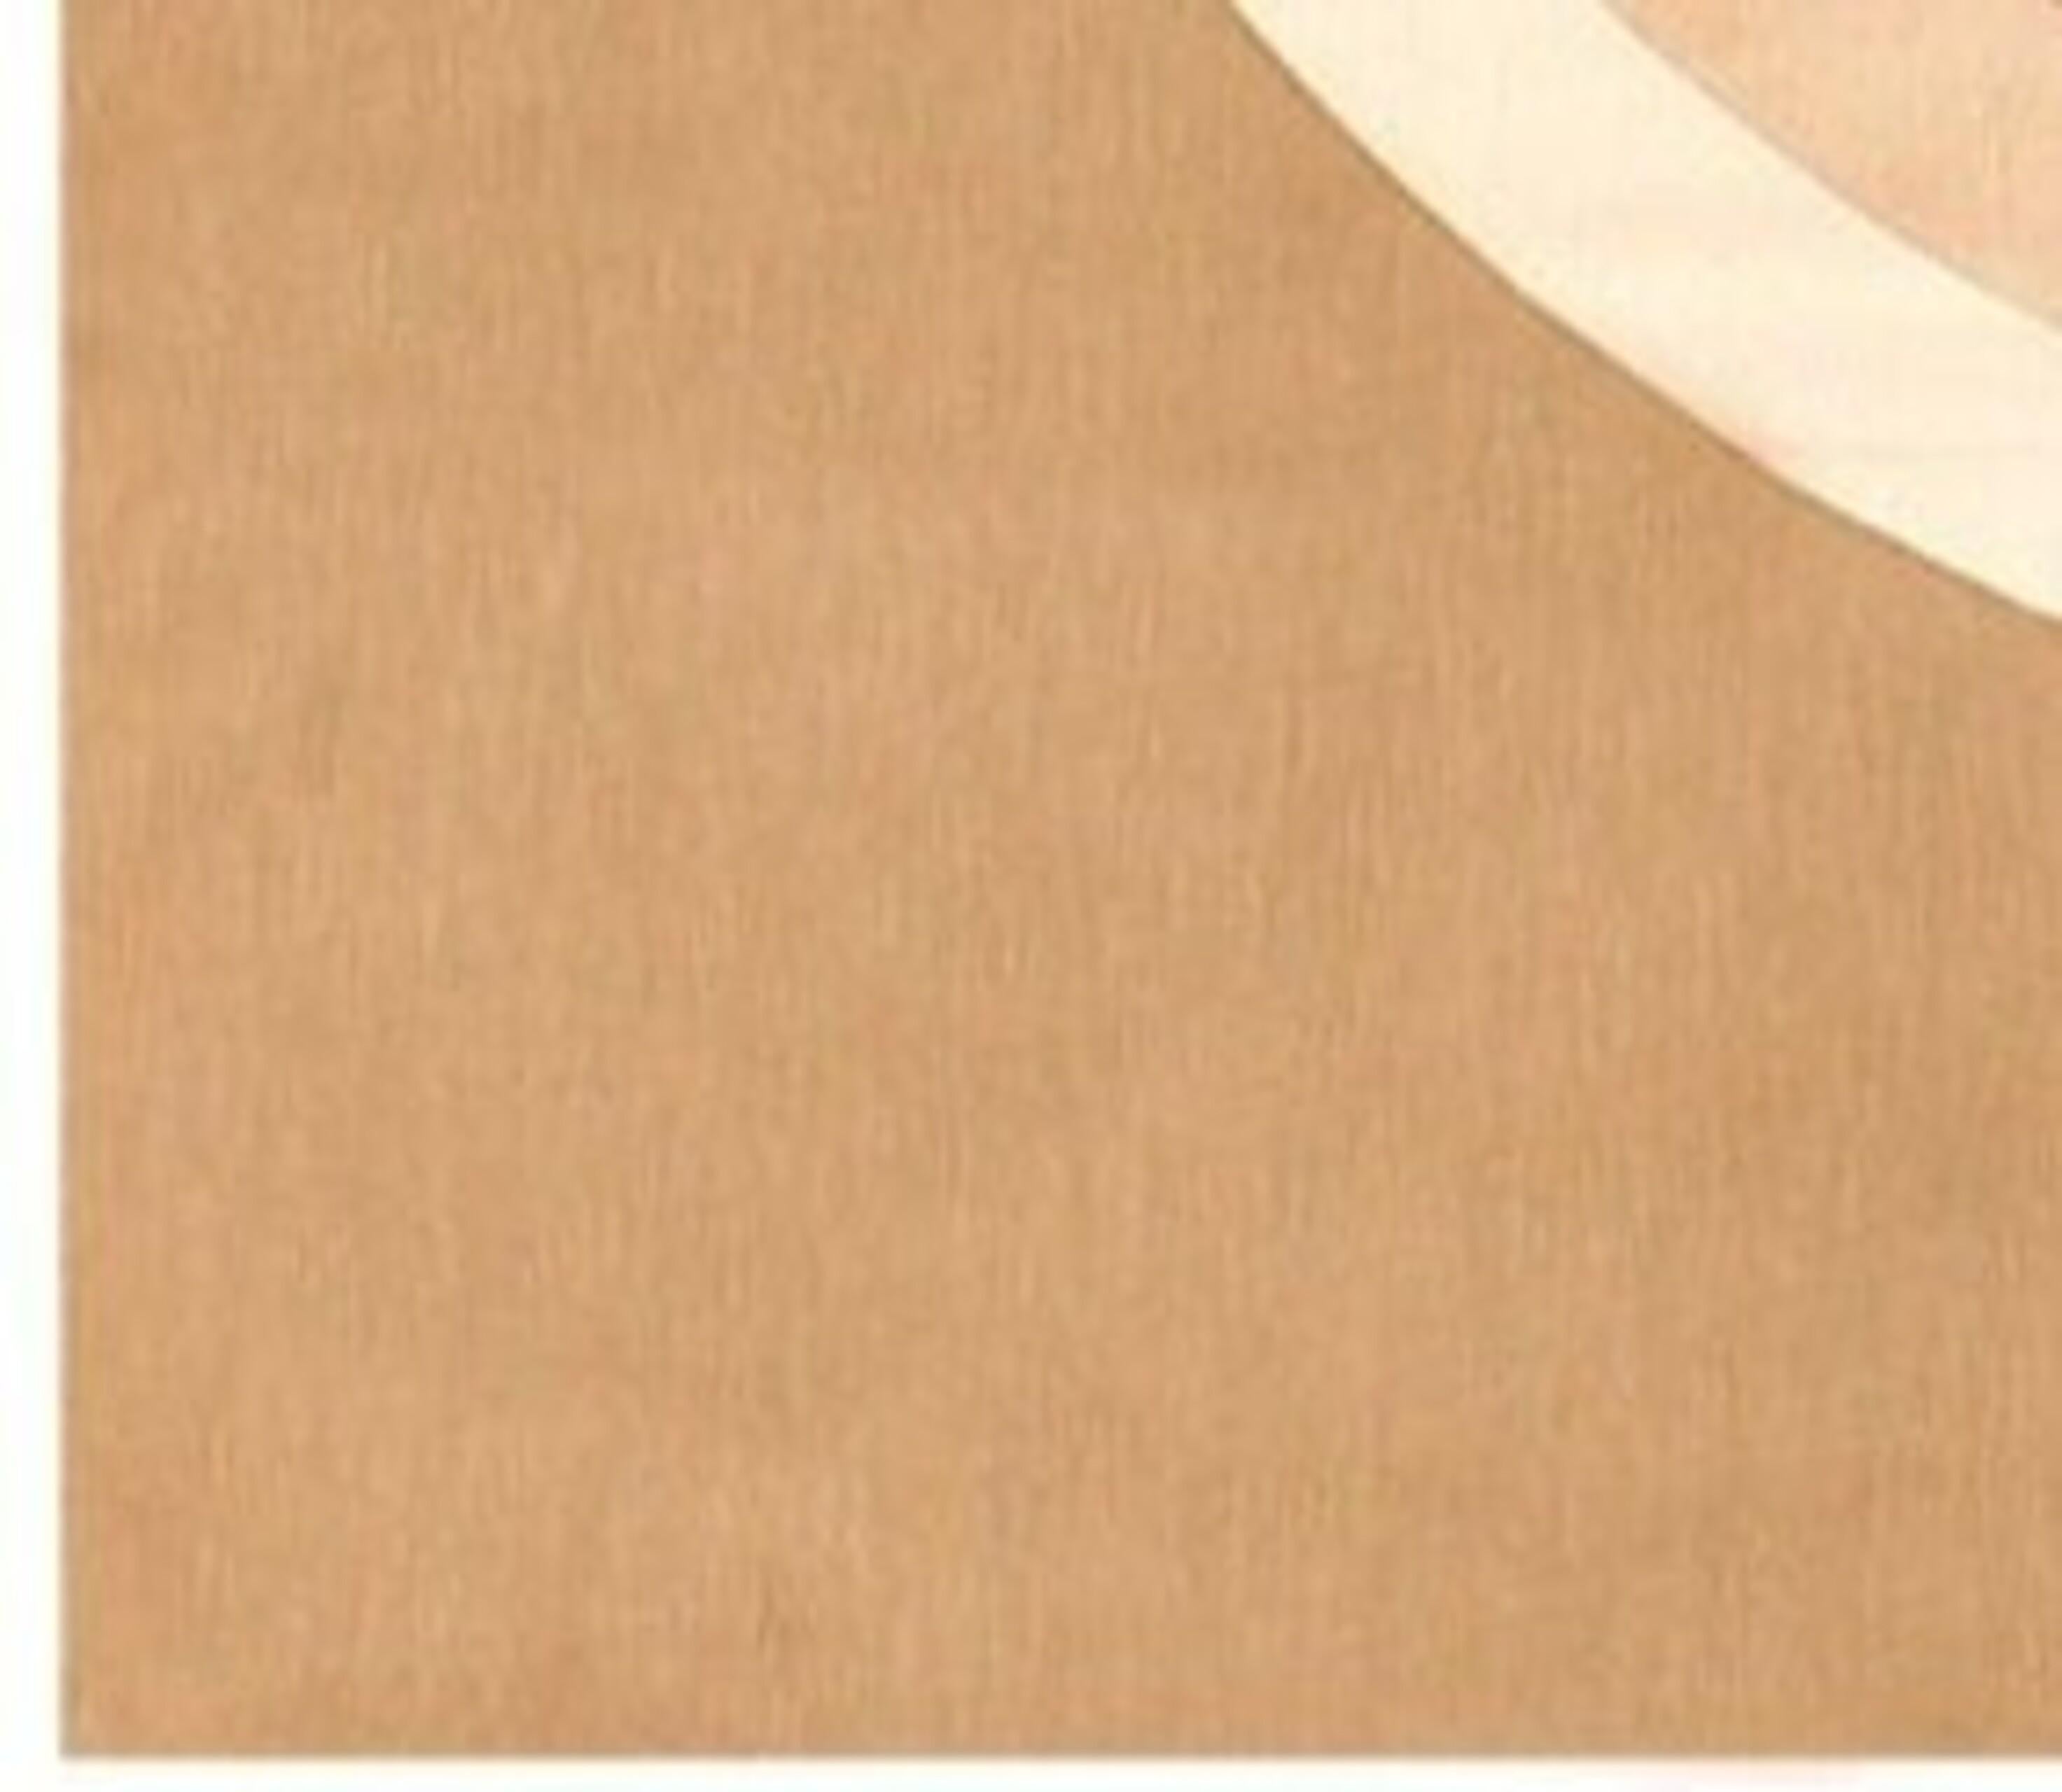 Vintage Verner Panton Textile, Pays d'origine : Danemark, Date de Circa : Milieu du 20ème siècle. Taille : 4 ft x 4 ft 1 in (1,22 m x 1,24 m)

Le penchant de Verner Panton pour l'utilisation des éléments de la lumière et de la forme, de la forme et